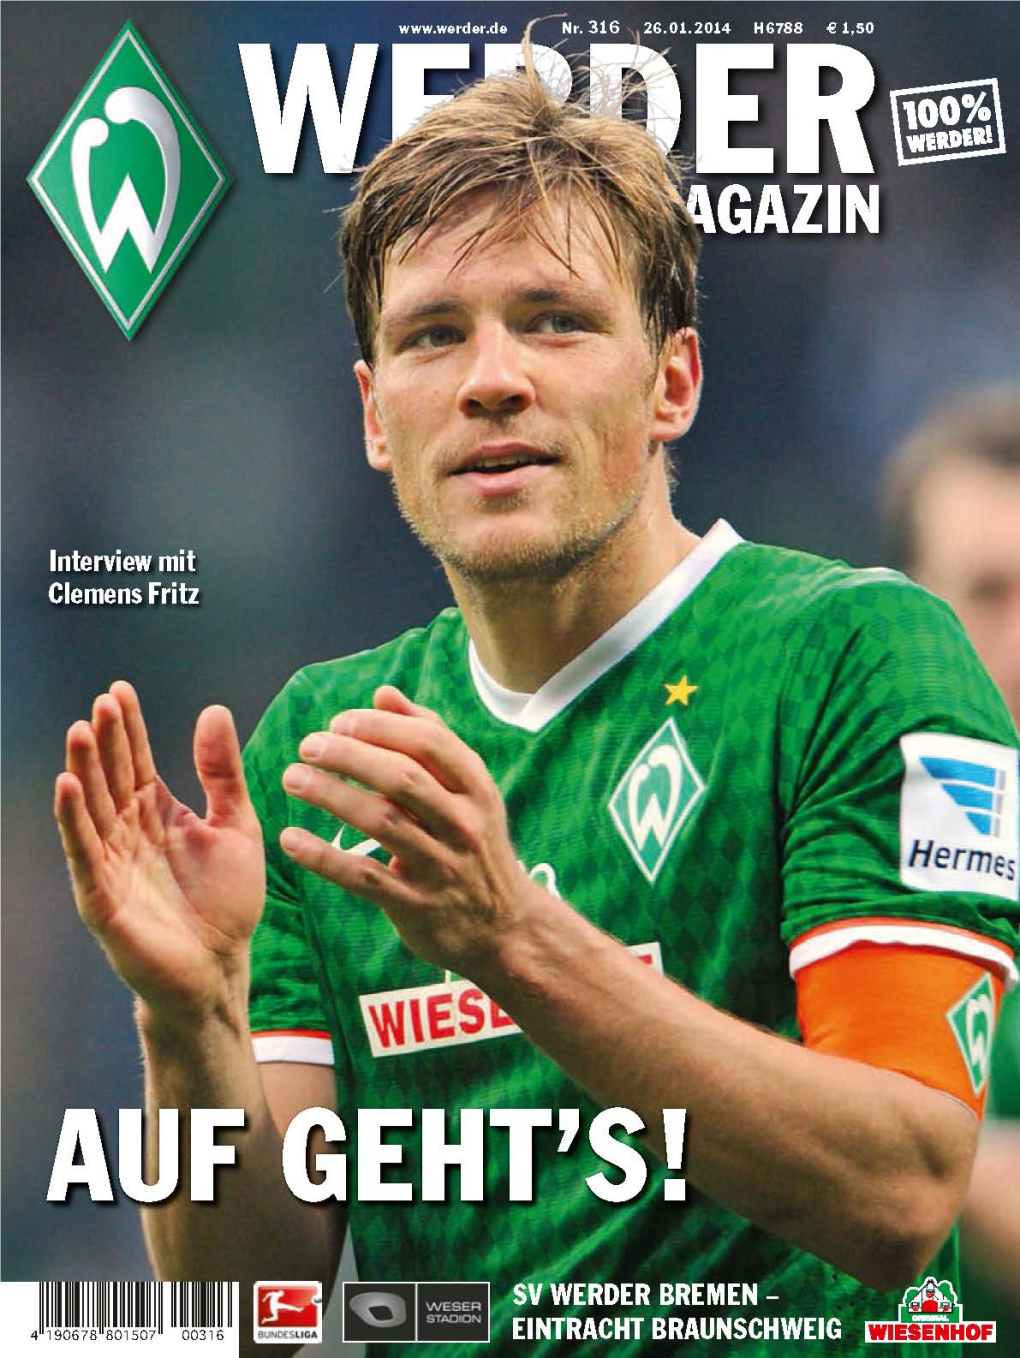 Liebe Werder-Fans!